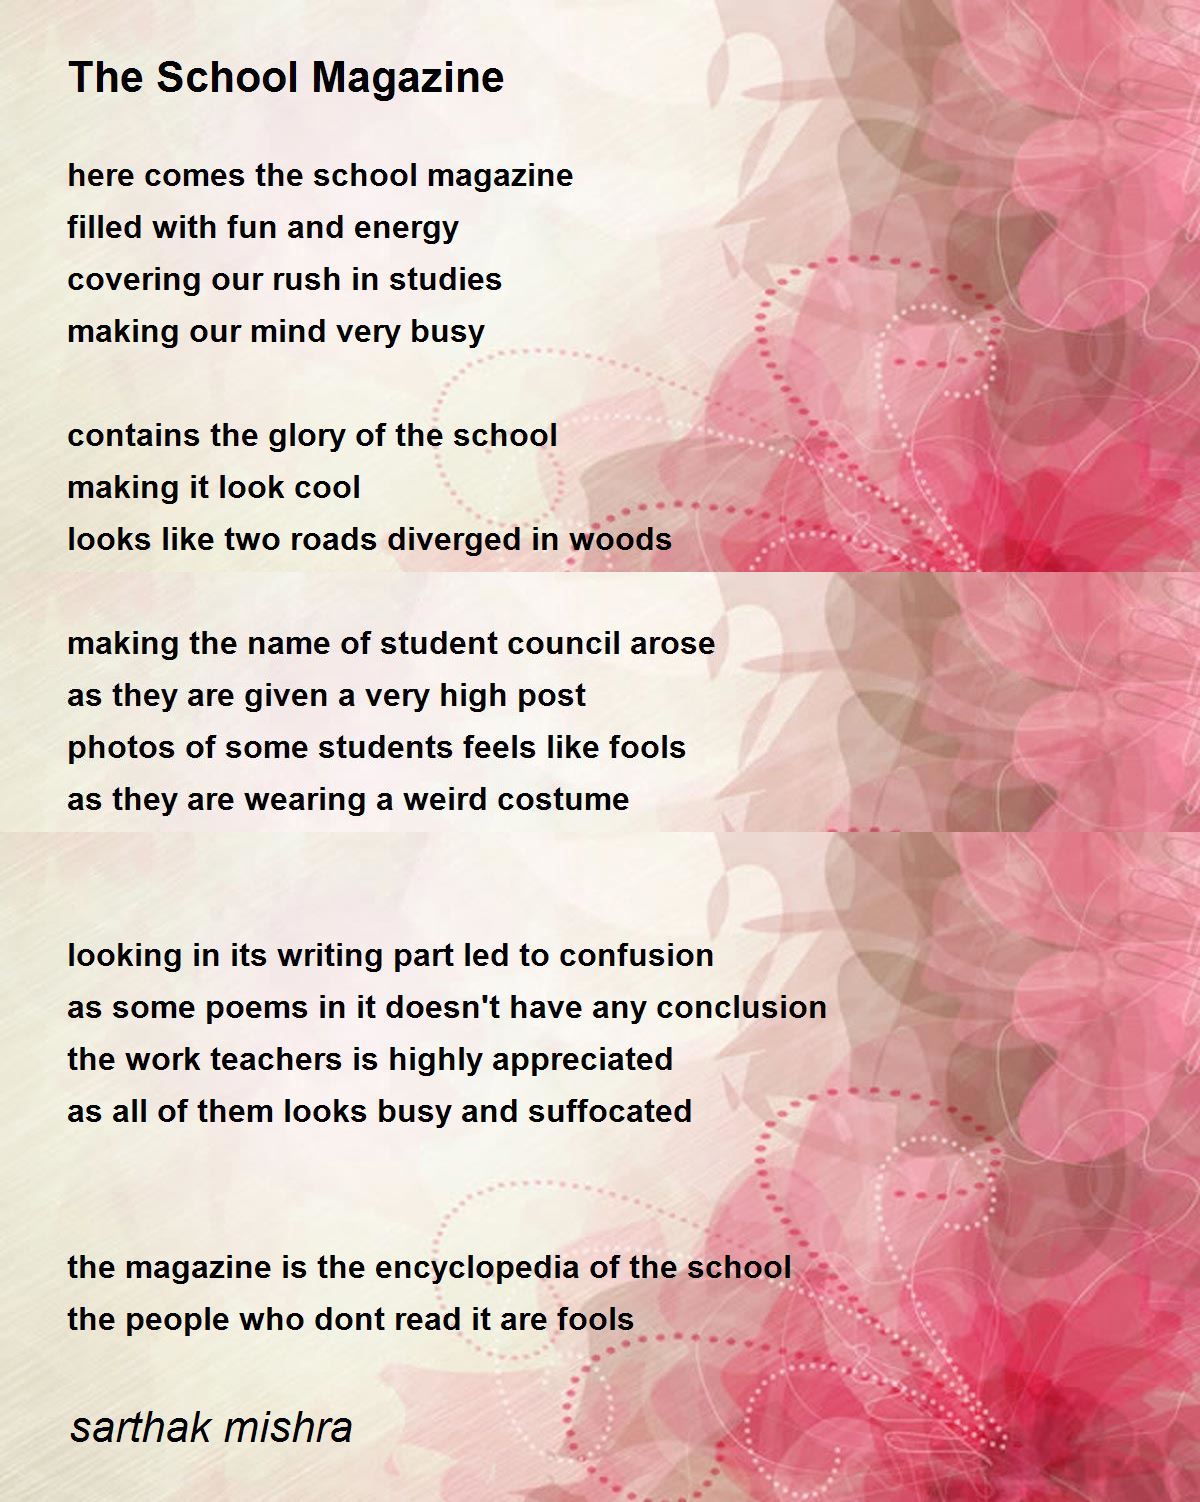 The School Magazine - The School Magazine Poem by sarthak mishra